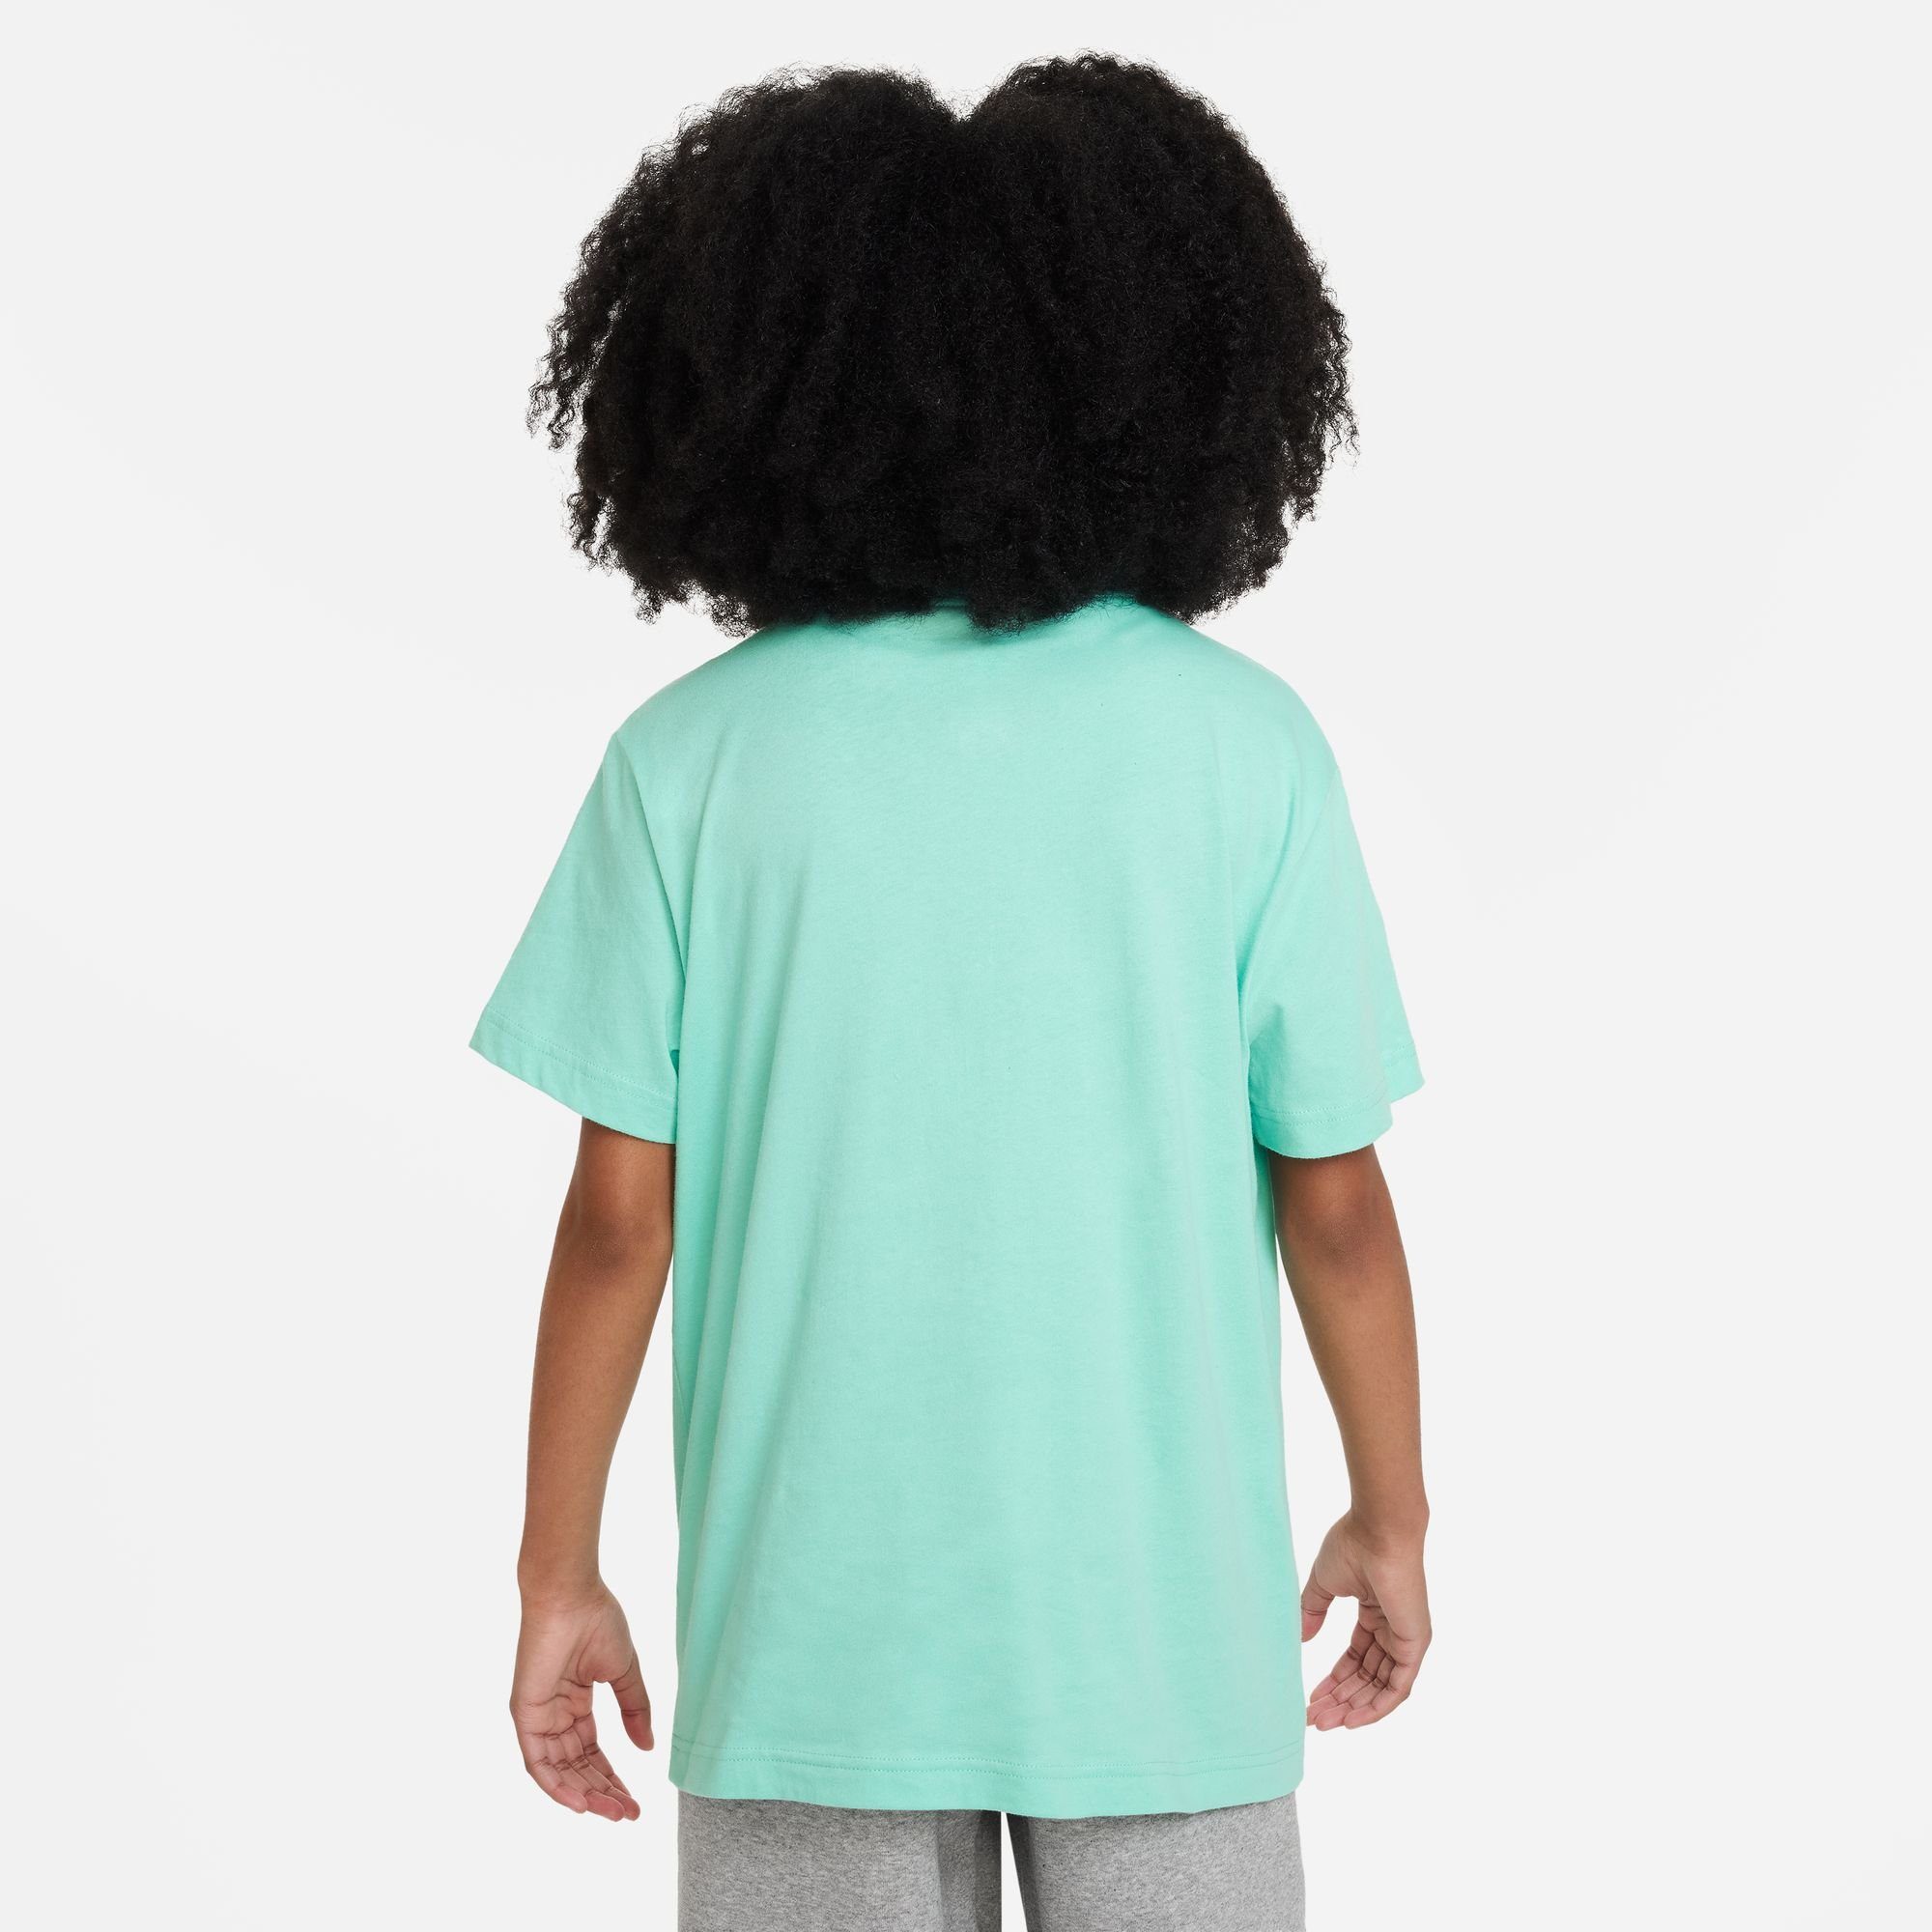 BIG T-SHIRT KIDS' Sportswear RISE (GIRLS) EMERALD Nike T-Shirt